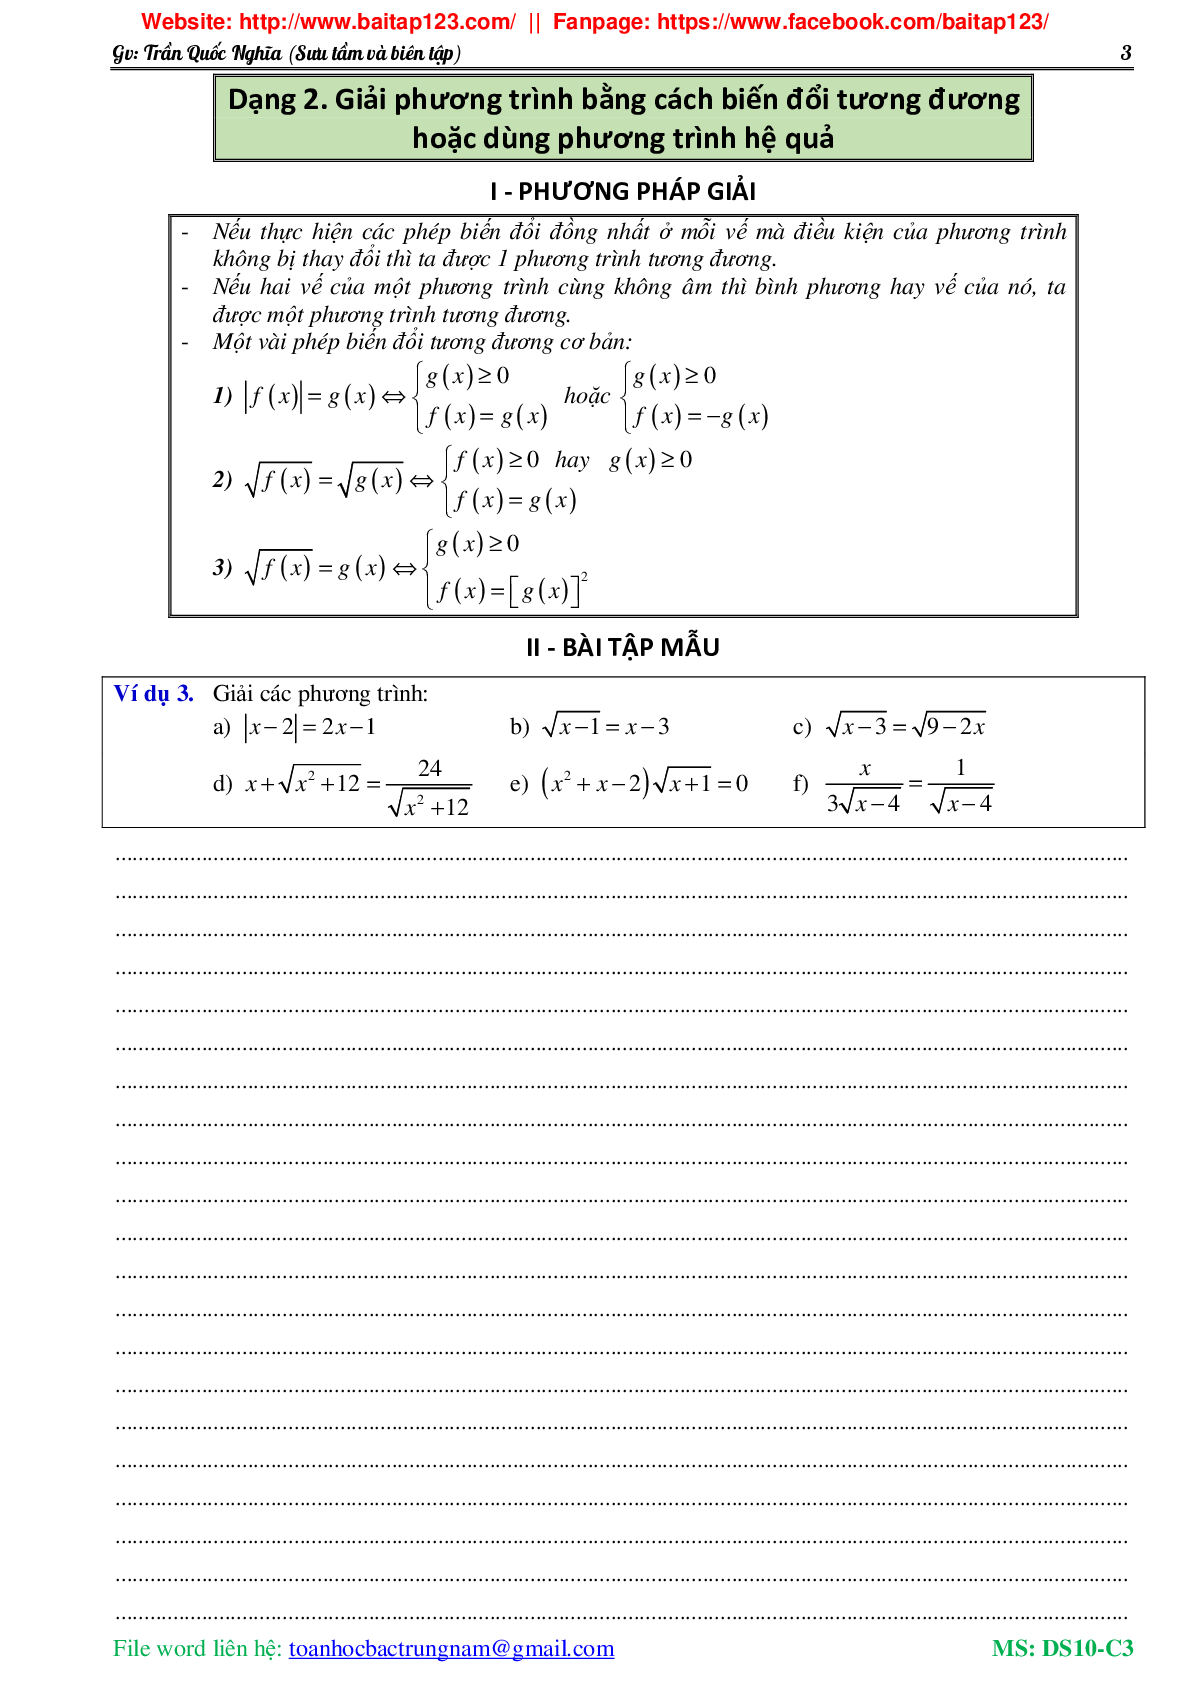 Các dạng toán phương trình và hệ phương trình môn Toán lớp 10 (trang 4)